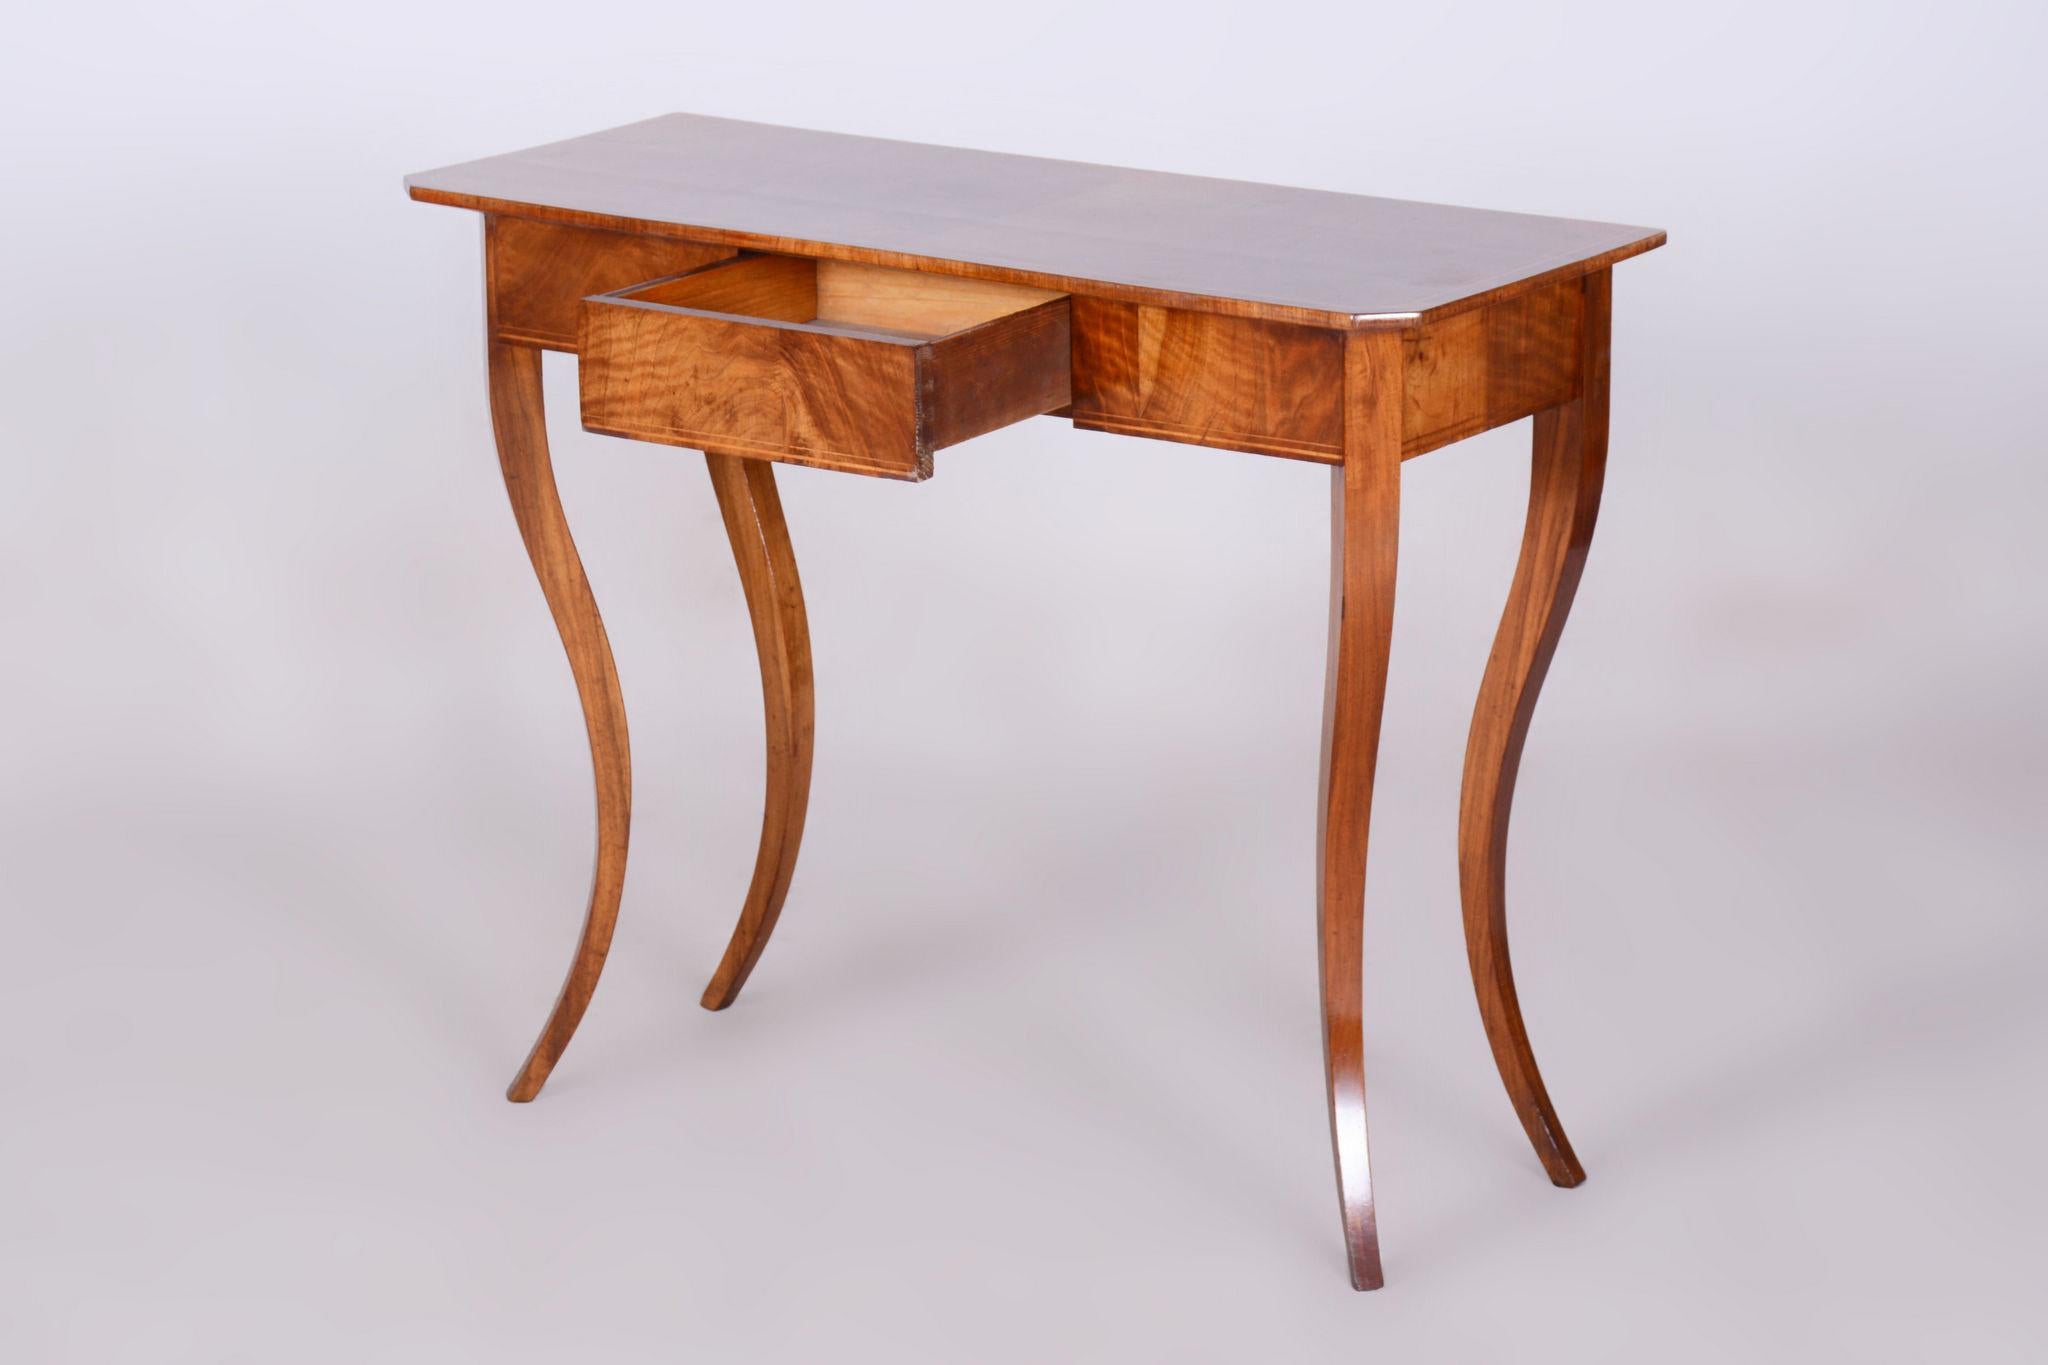 Restored Small Biedermeier Side Table, Walnut, Spruce, Maple, Austria, 1820s 1